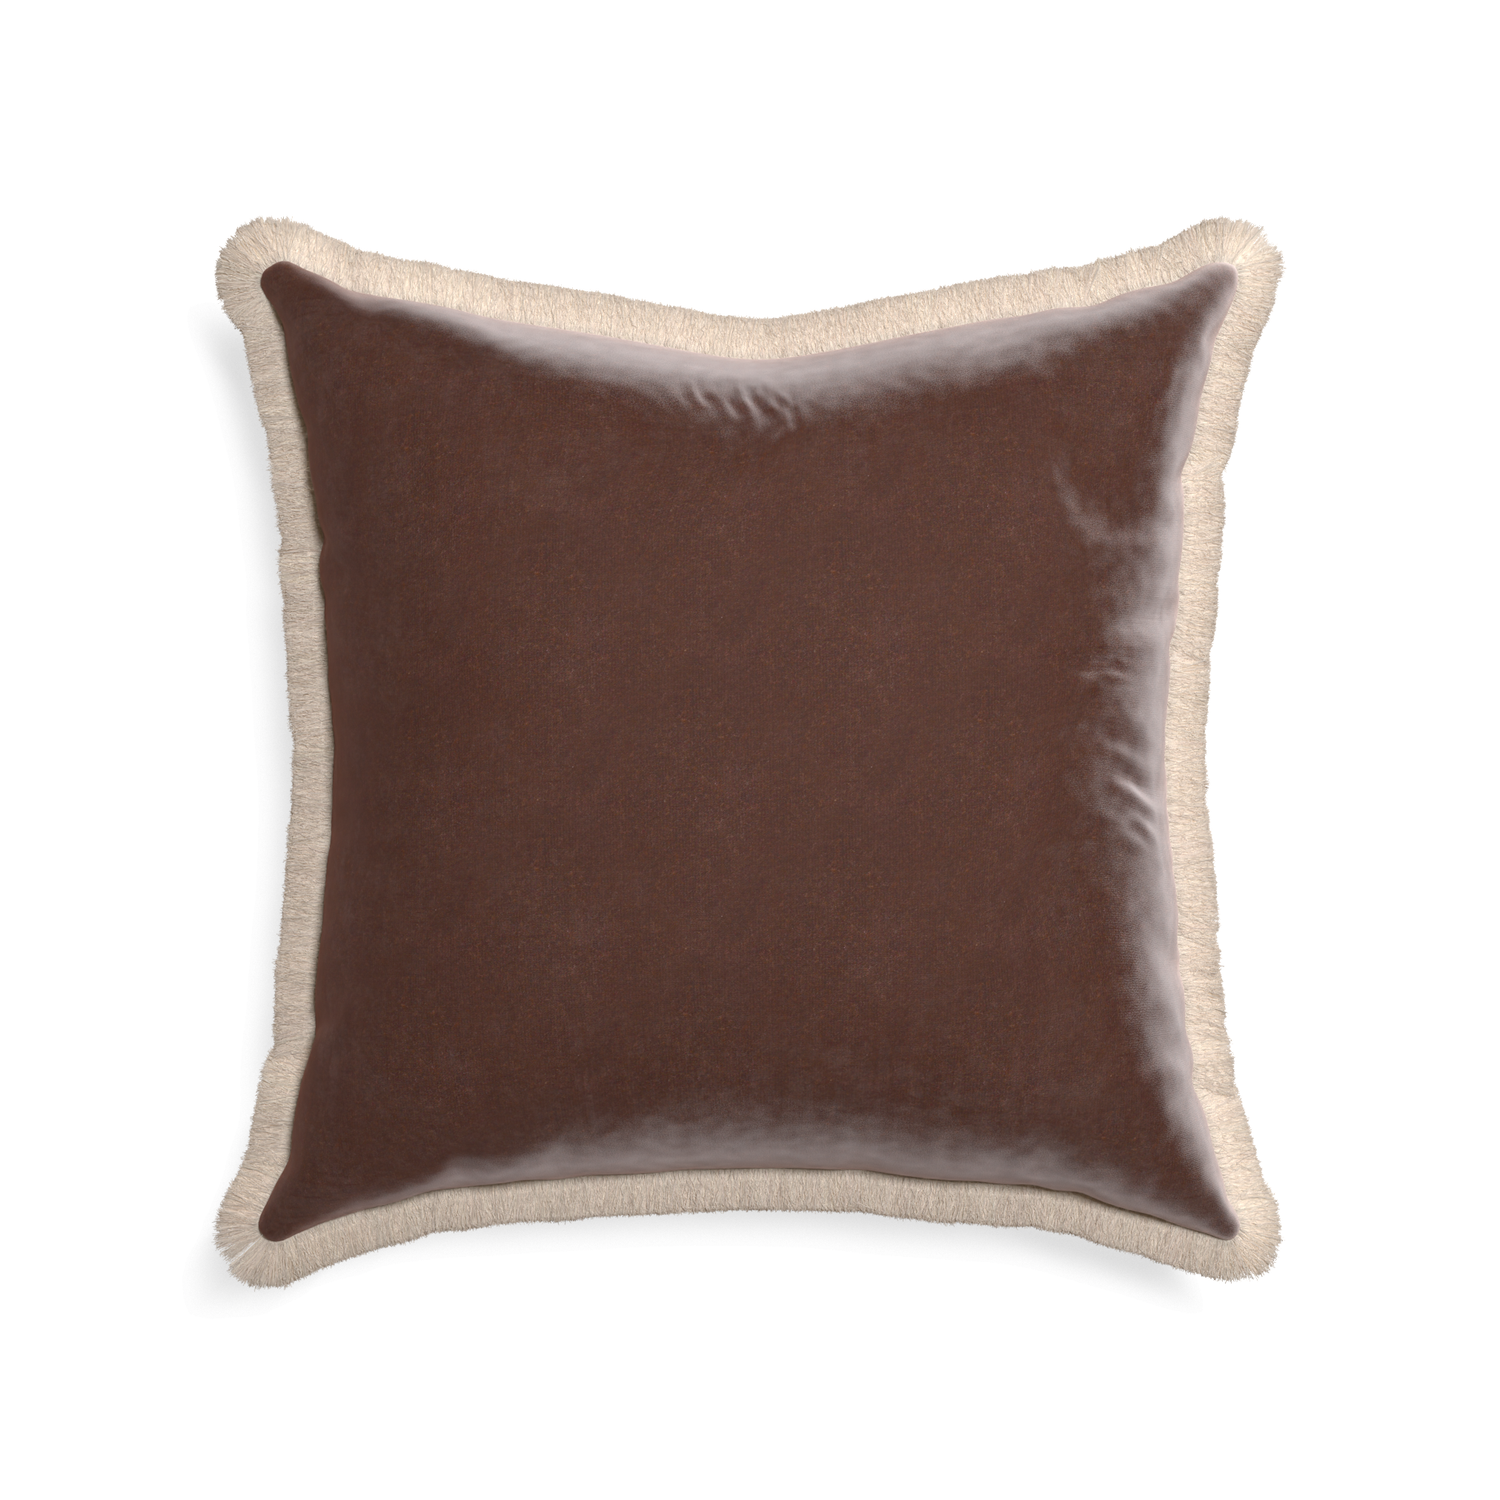 22-square walnut velvet custom pillow with cream fringe on white background